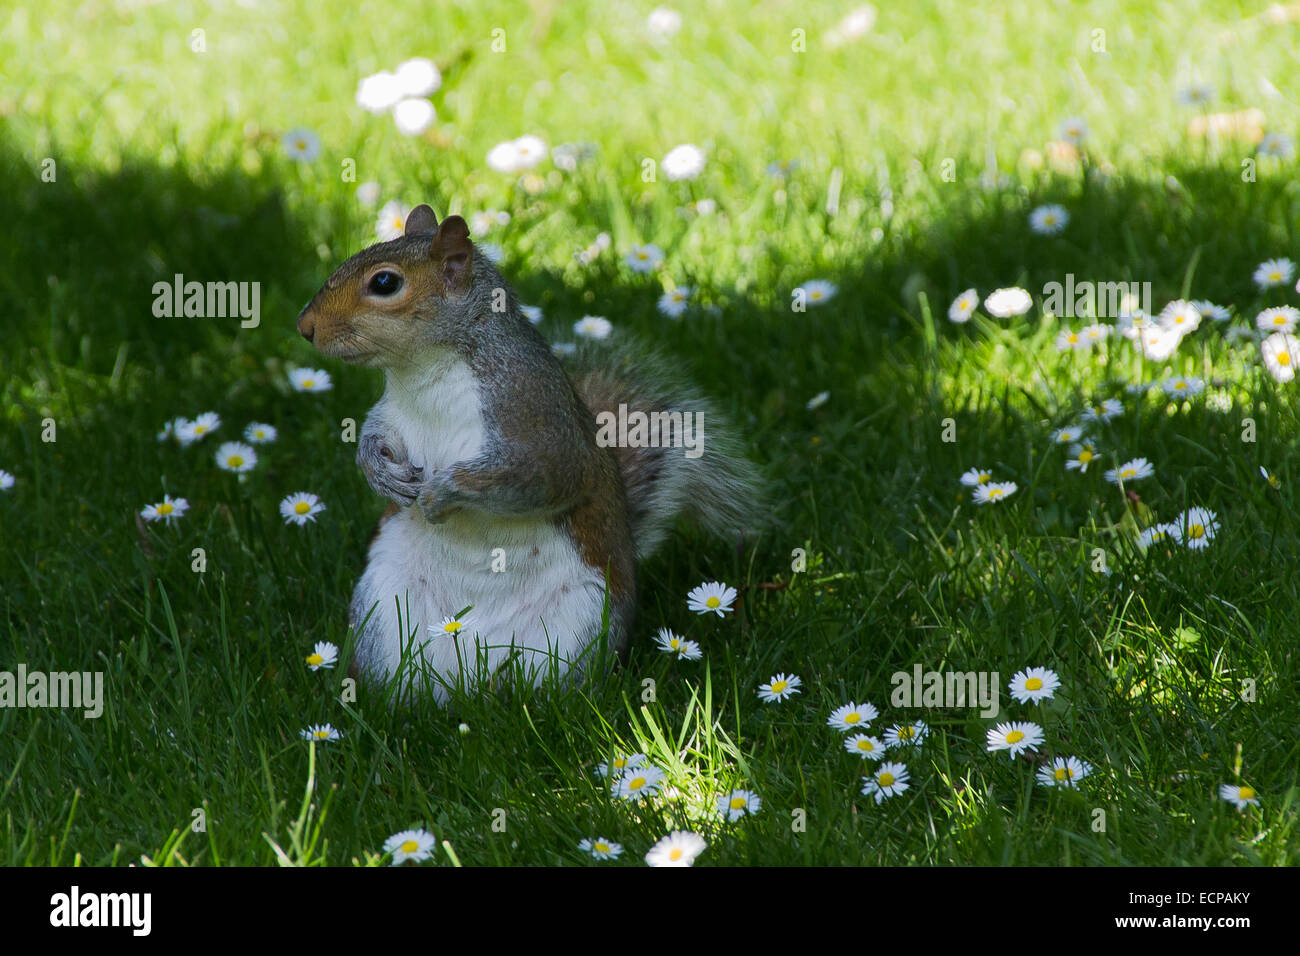 Un simpatico scoiattolo seduto in un parco a guardare i passanti, girato a colori durante il periodo estivo a Londra. Foto Stock